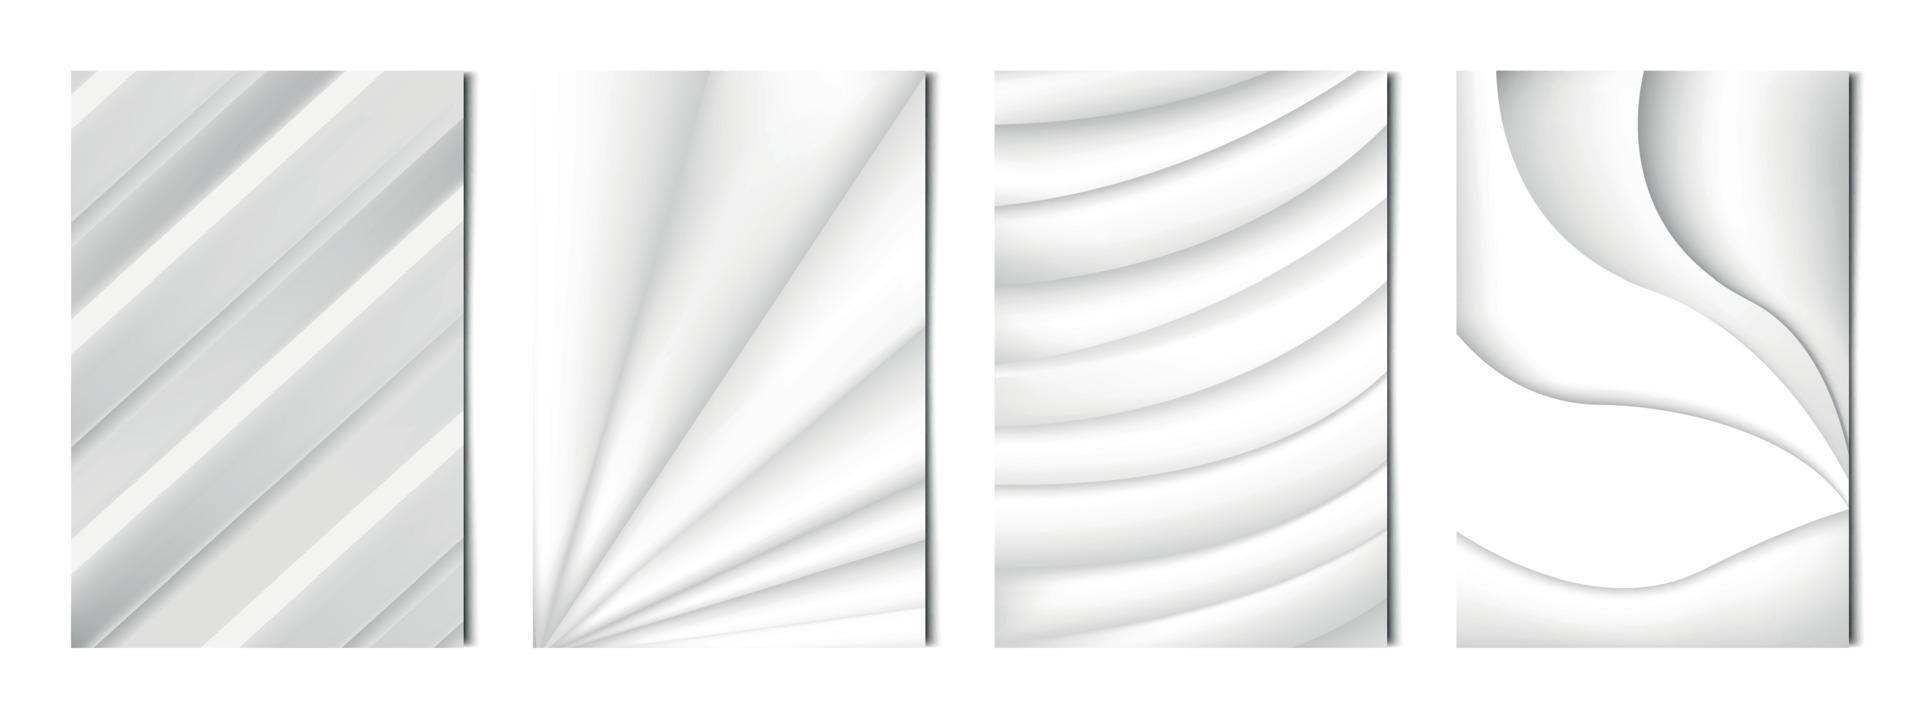 conjunto de 4 pcs abstratos luz linhas brancas onduladas, modelos para publicidade, cartões de visita, texturas - vetor